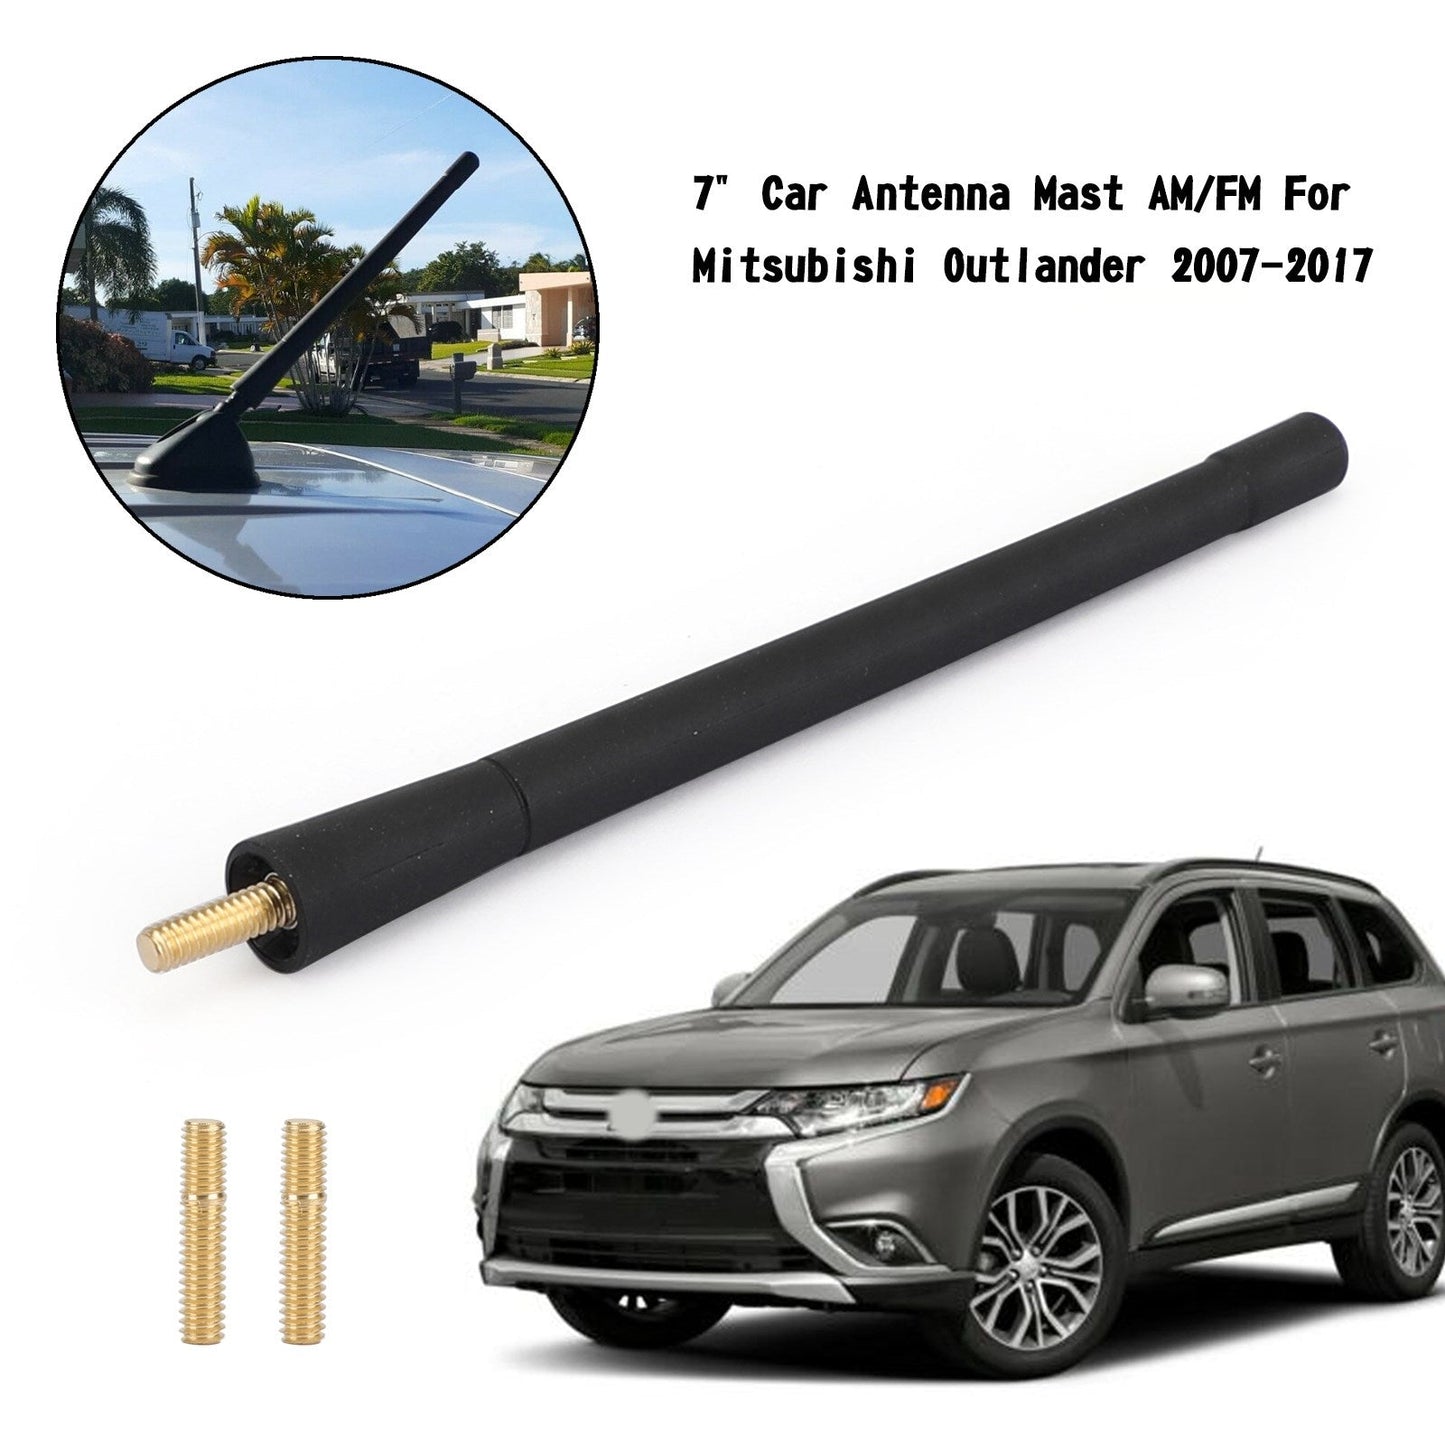 7" Car Antenna Mast AM/FM For Mitsubishi Outlander 2007-2017